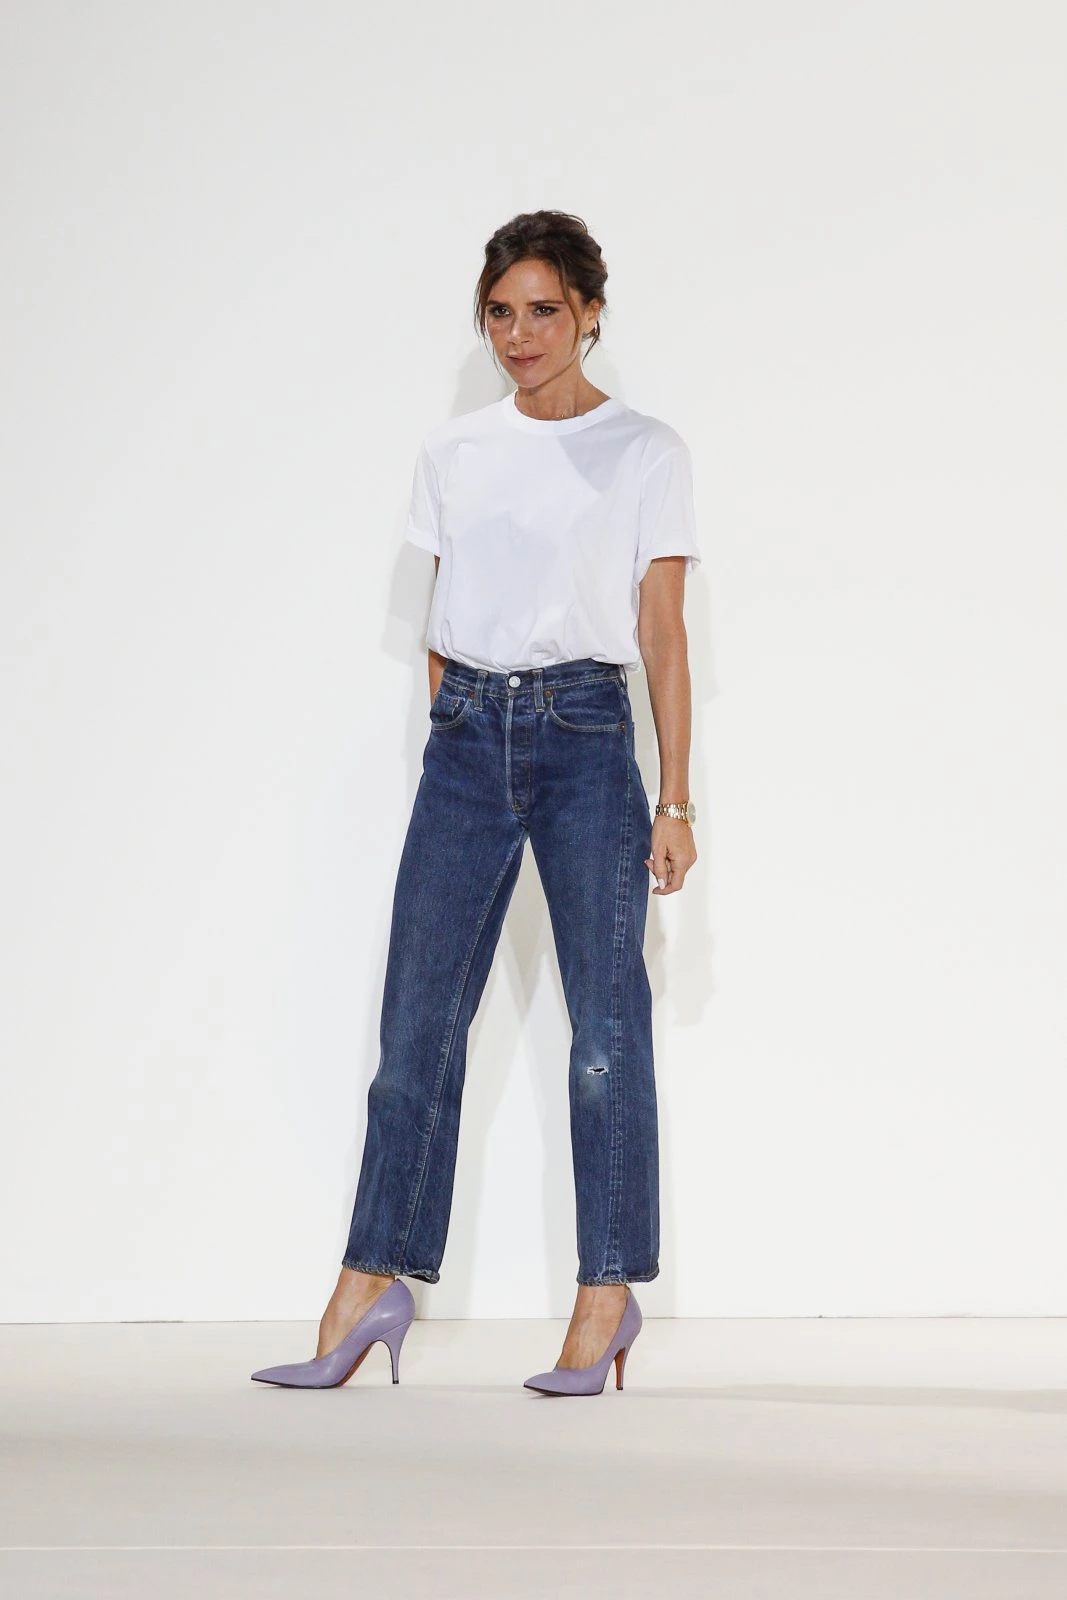 Victoria Beckham: Φορά για πρώτη φορά αυτό το τζιν παντελόνι (το έχεις κι εσύ!)